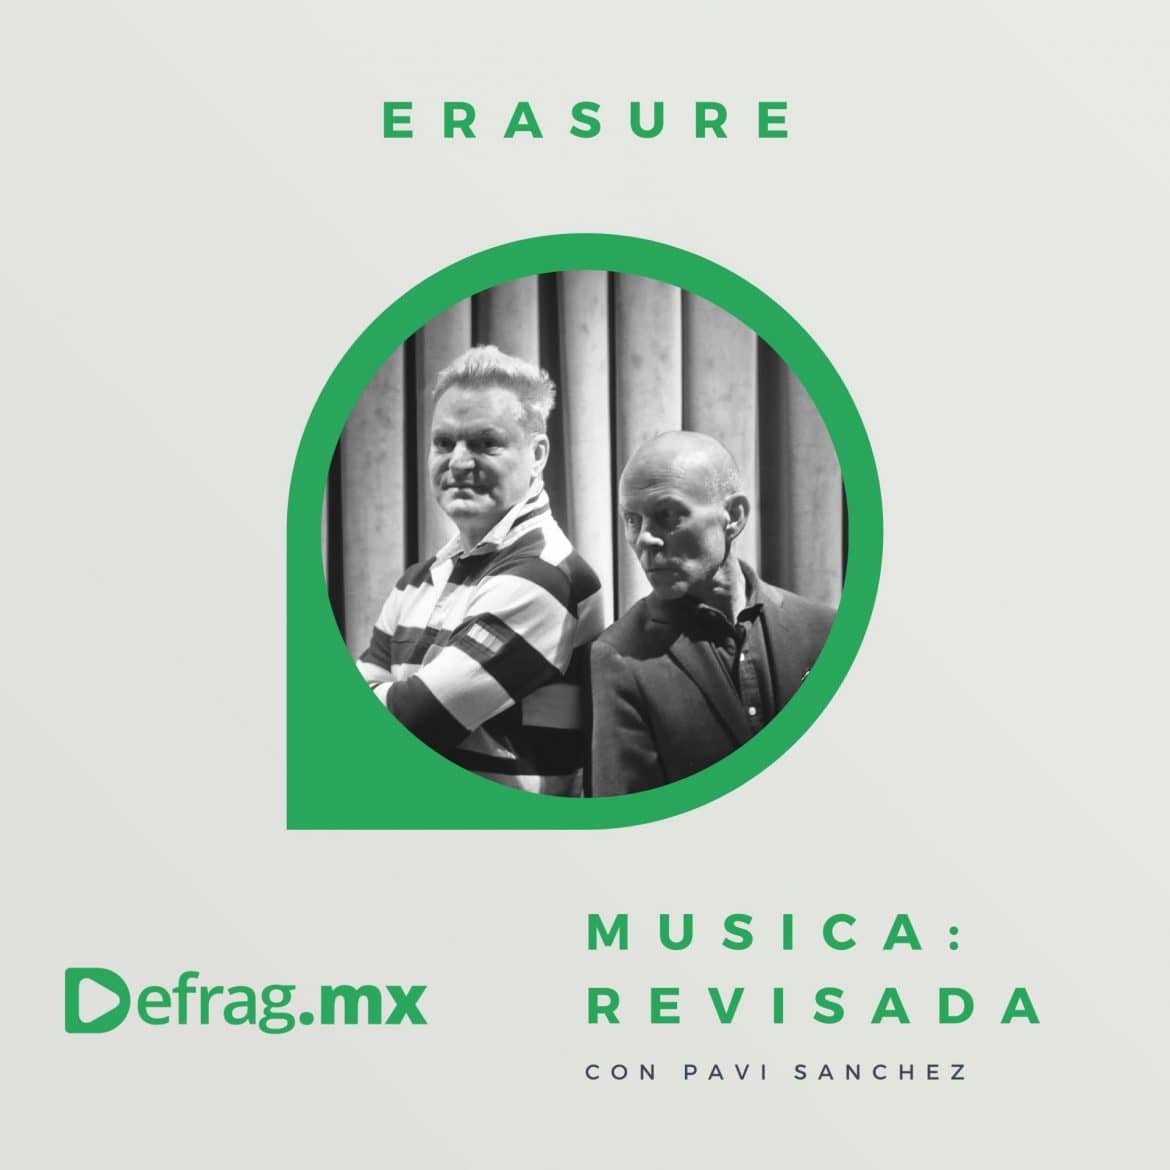 Defrag.mx Podcast Música Revisada Erasure